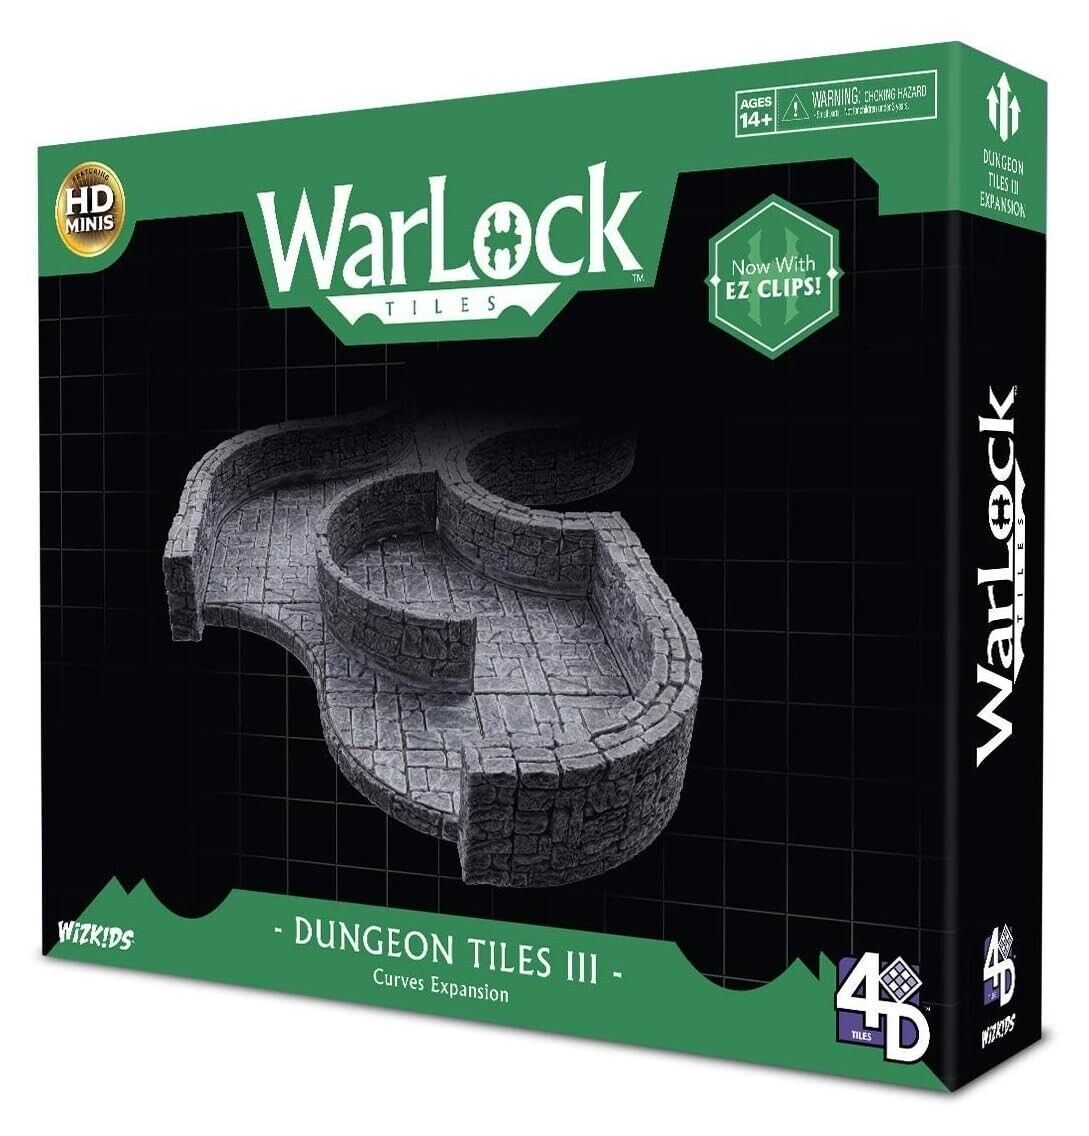 Primary image for Wizkids/Neca WarLock Tiles: Dungeon Tiles III - Curves